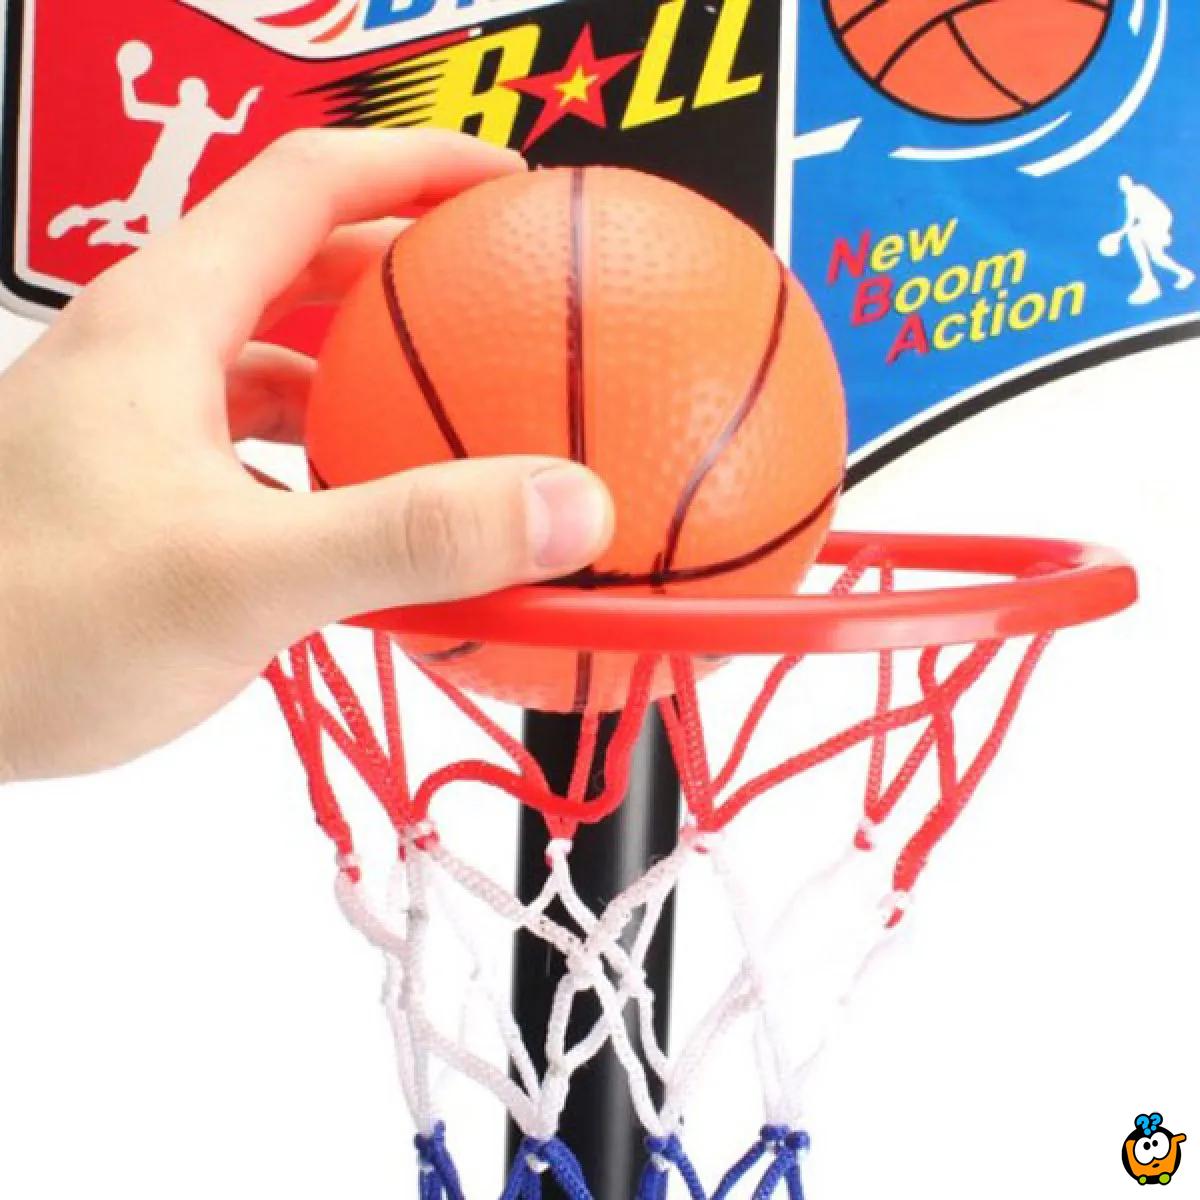 Basketball set - Košarkaški set za decu